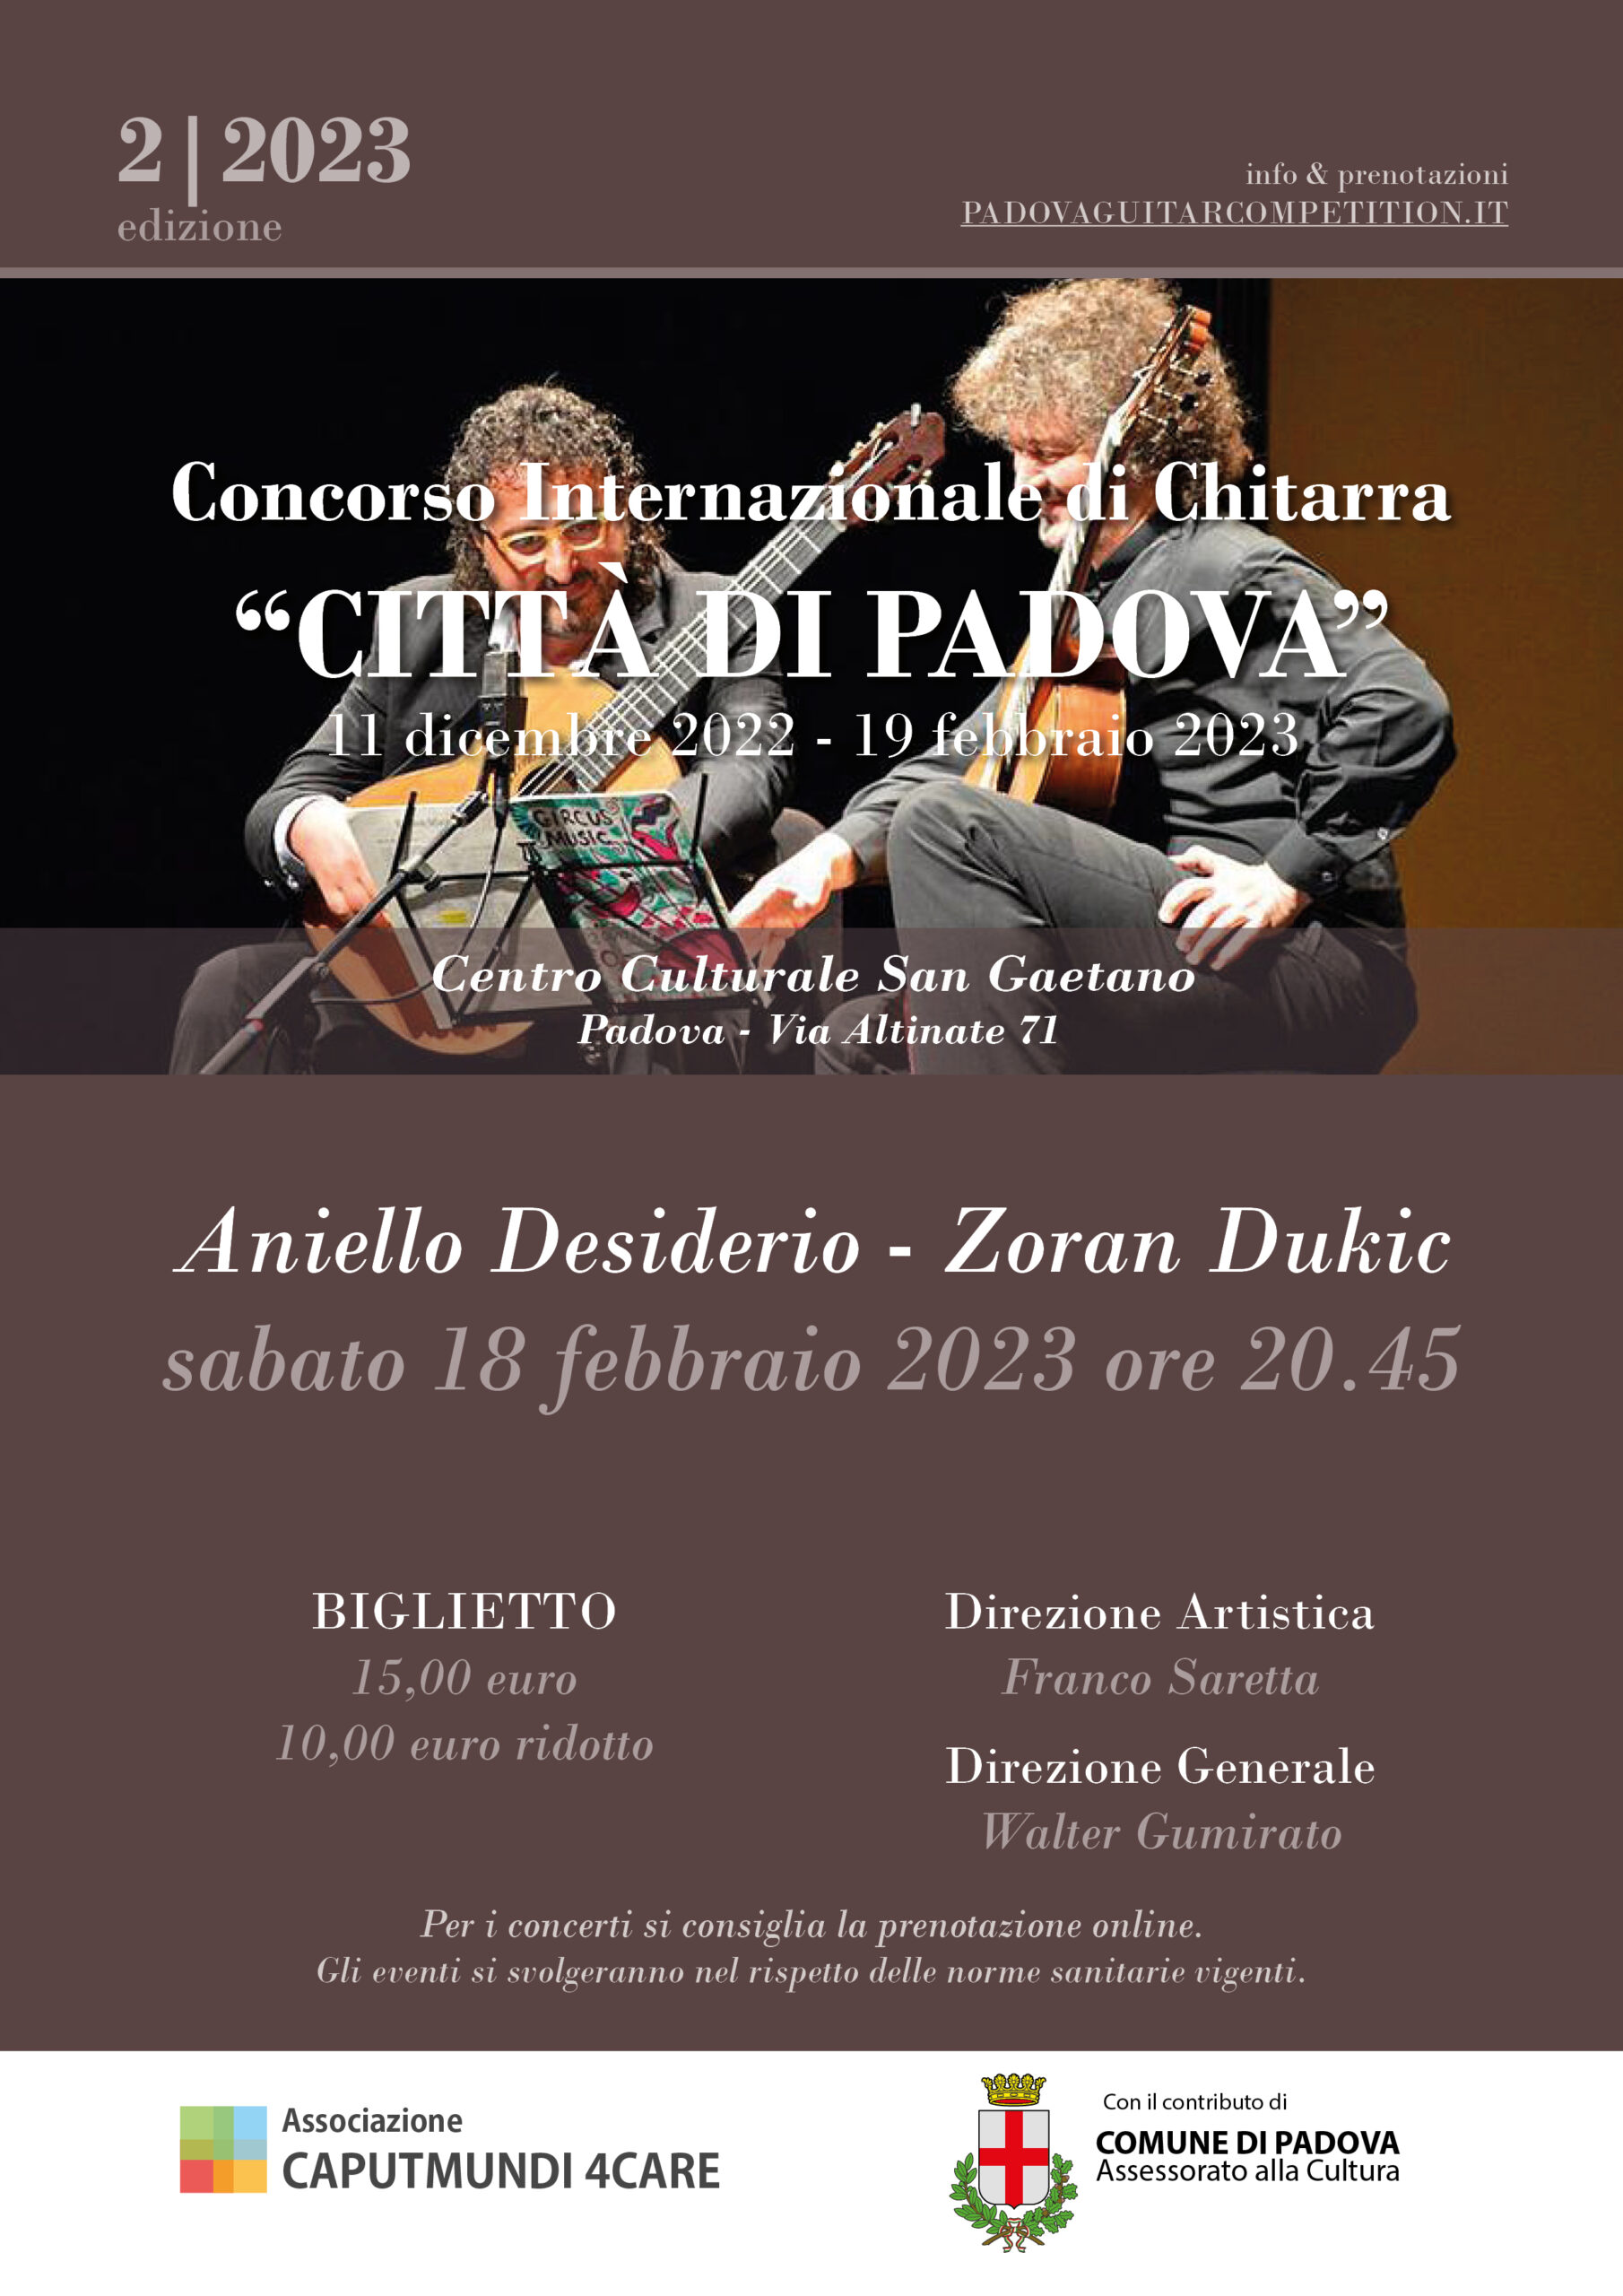 Concerto Aniello Desiderio - Zoran Dukic